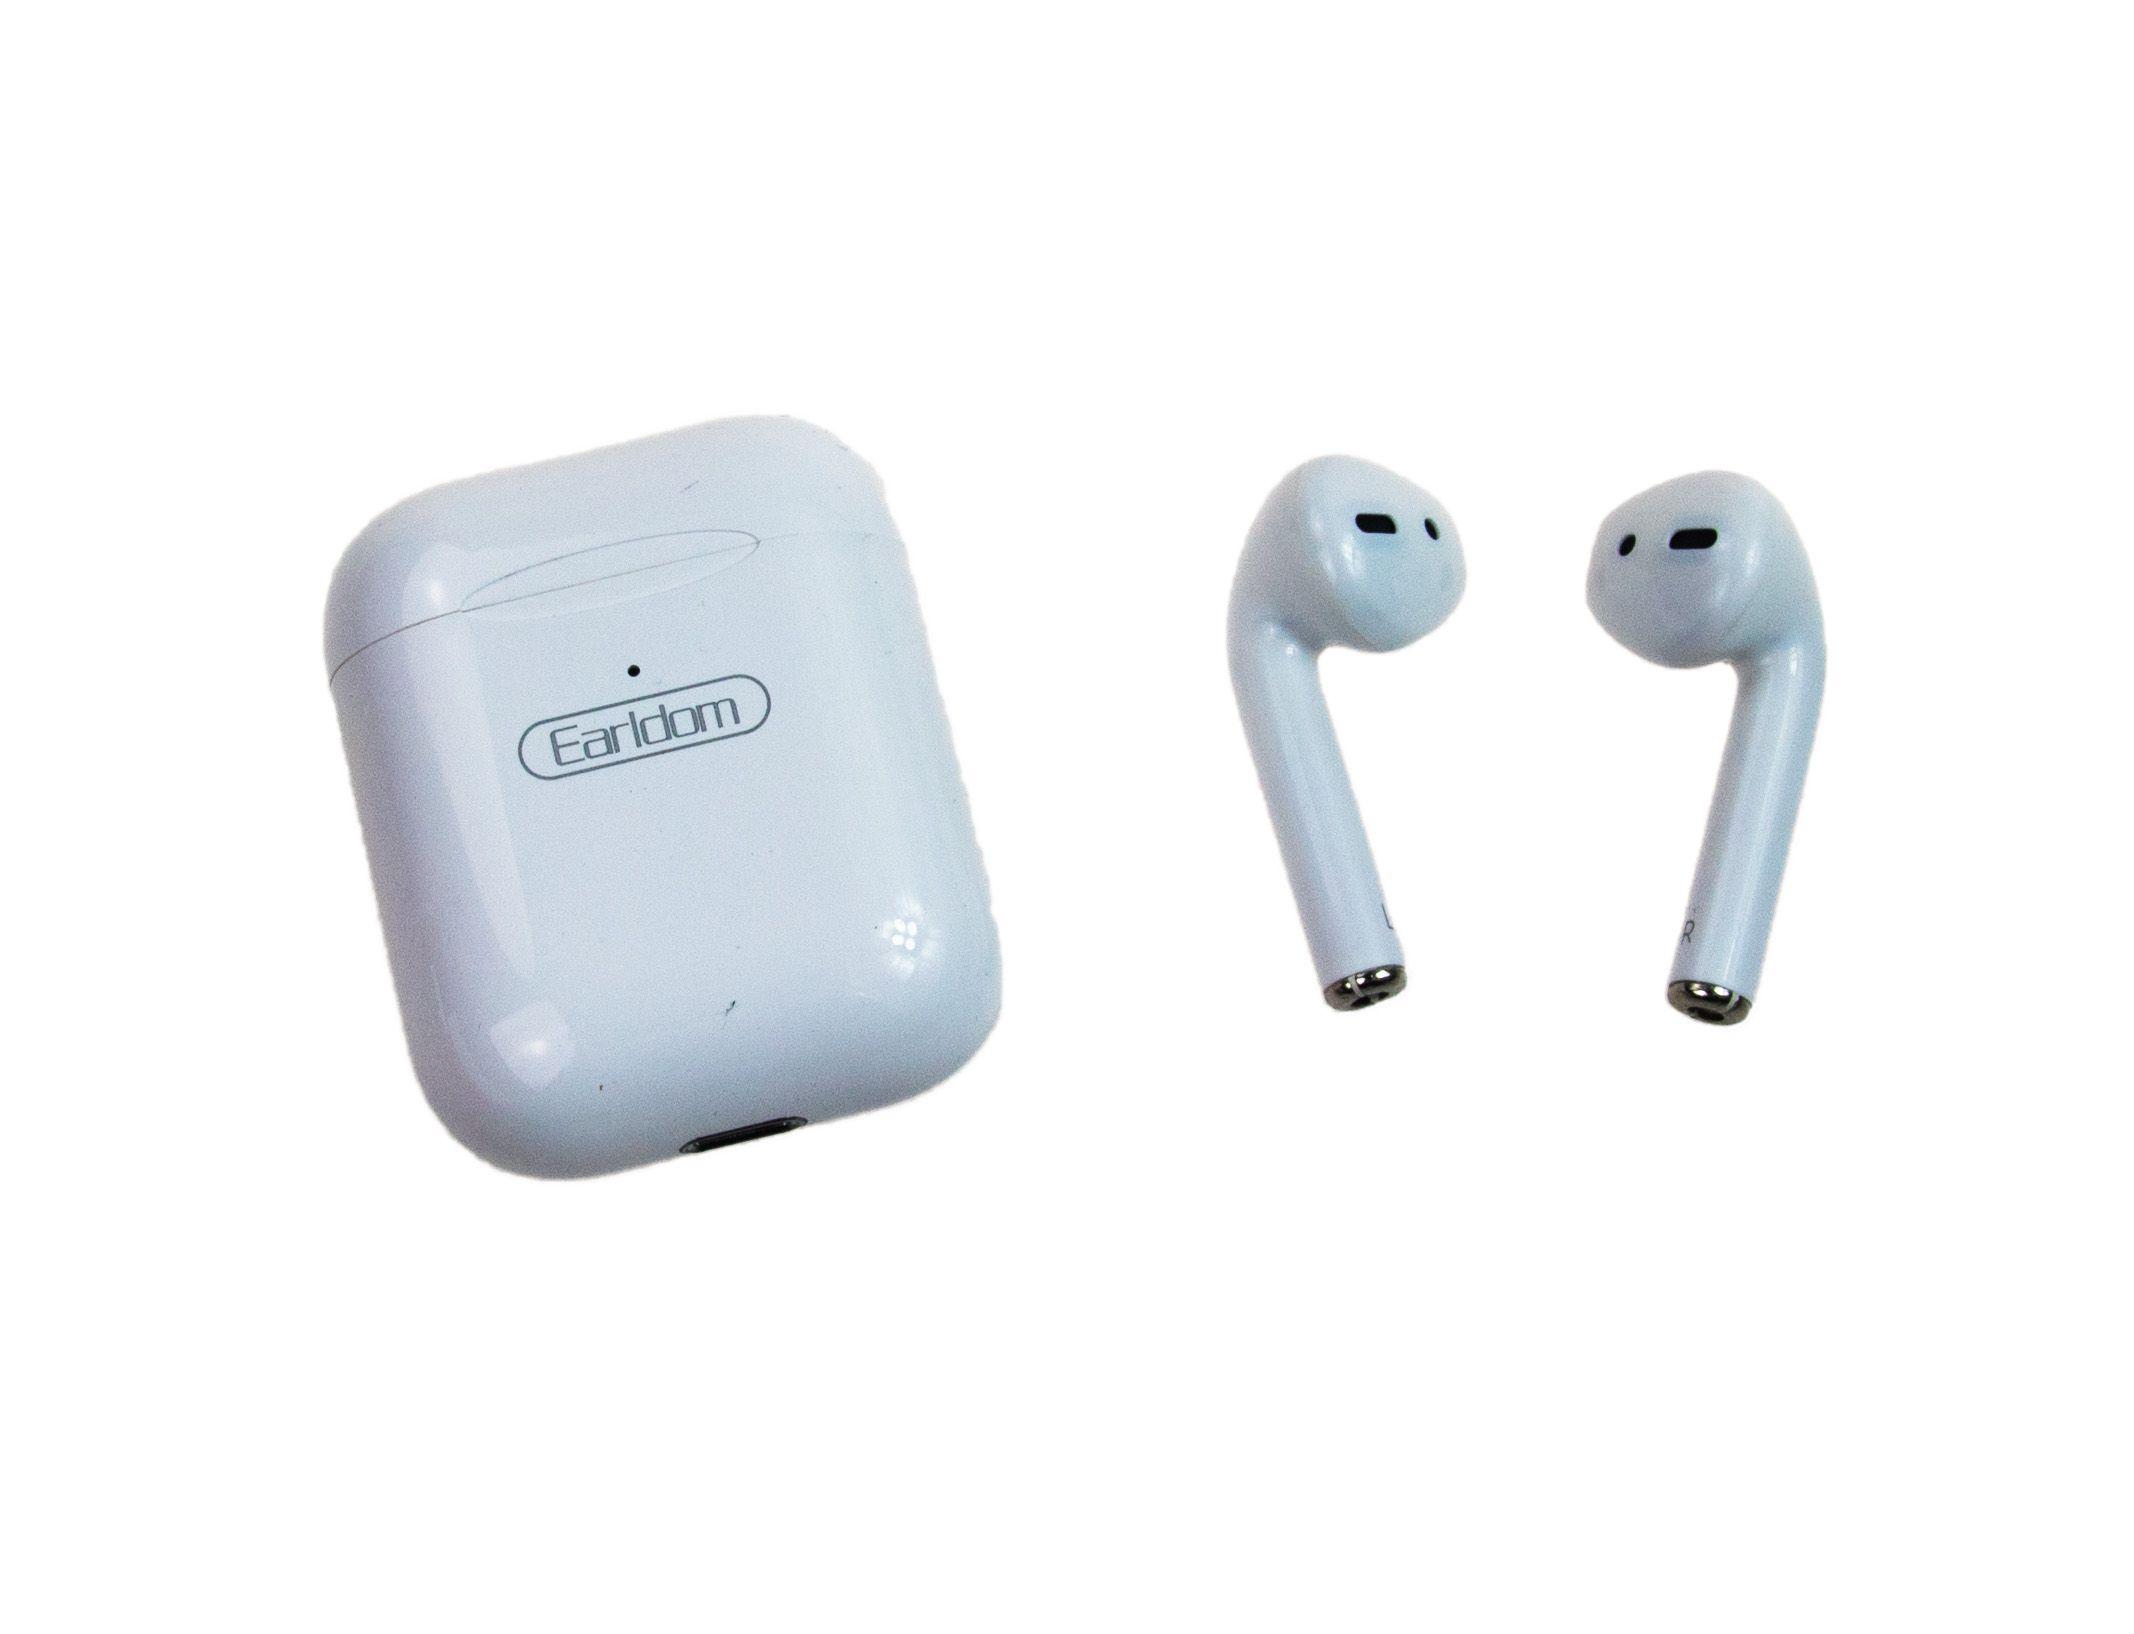 Bluetooth Bezdrátová sluchátka BH16 s indukčním nabíjením